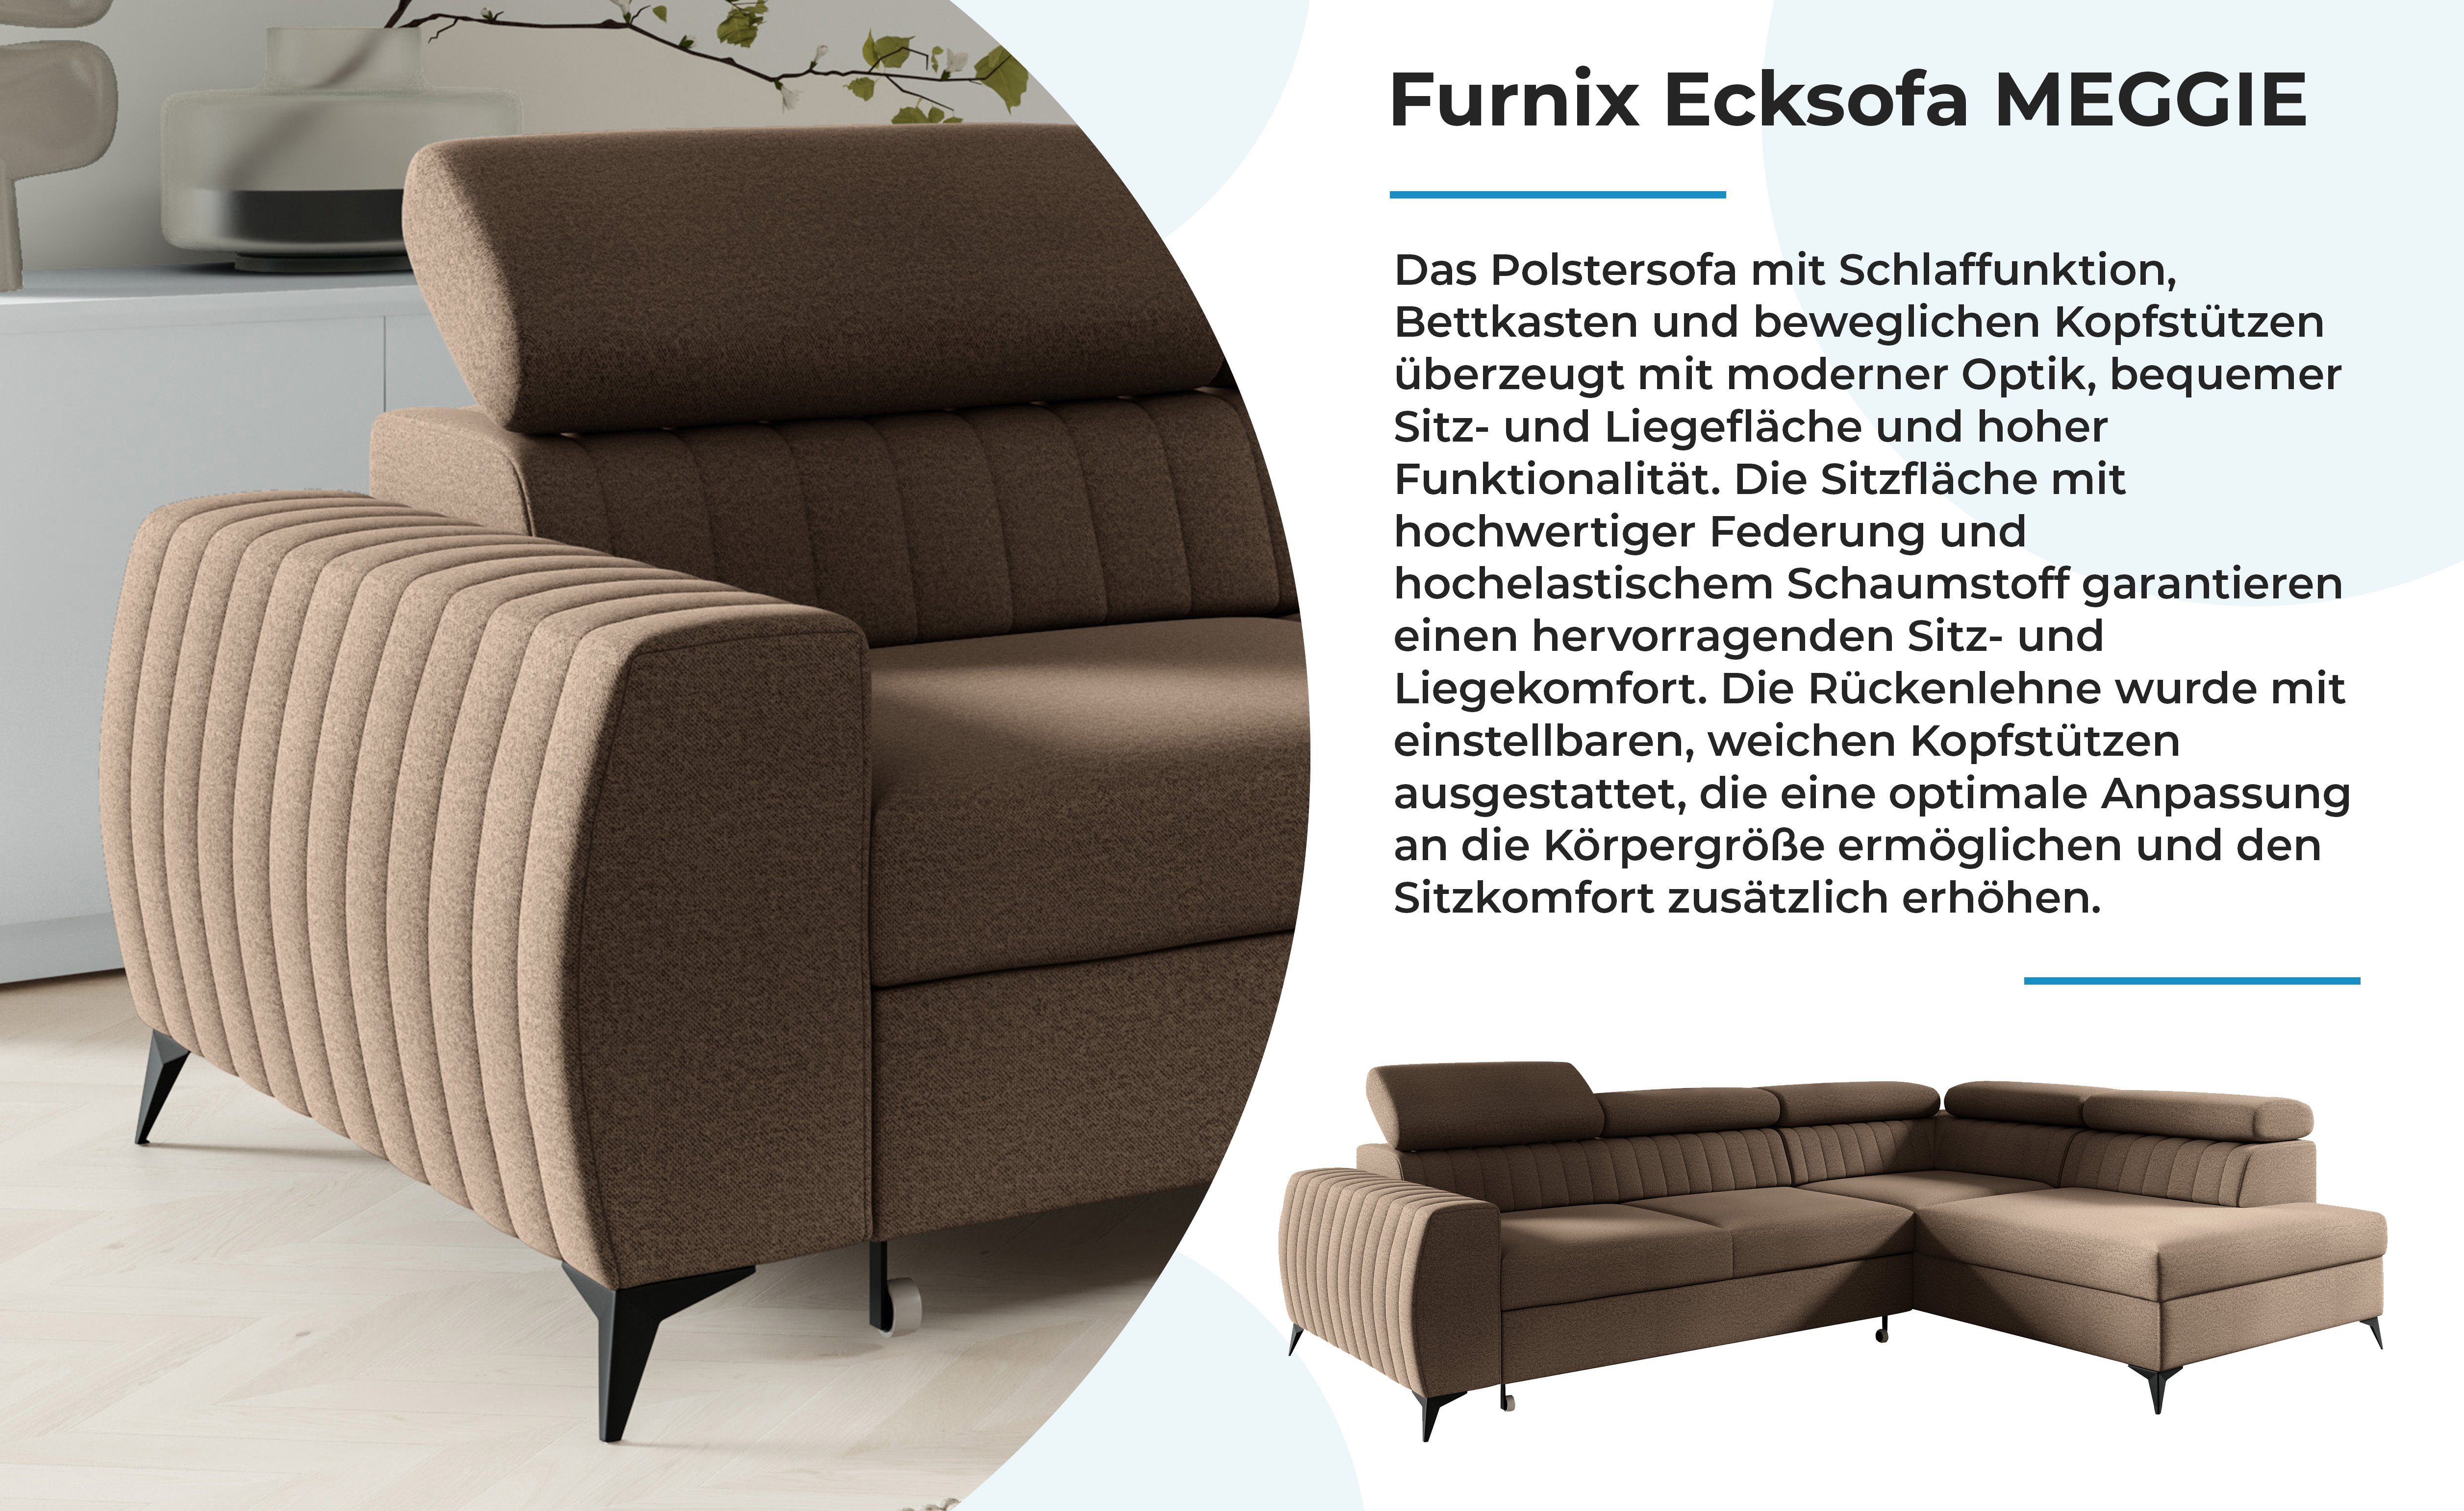 Furnix Sofa Ecksofa mit 130 cm EL05 T200 x Liegefläche: Polstercouch H95 204 B270 cm, x MEGGIE x Maße: Braun Auswahl, Bettkasten Schlaffunktion